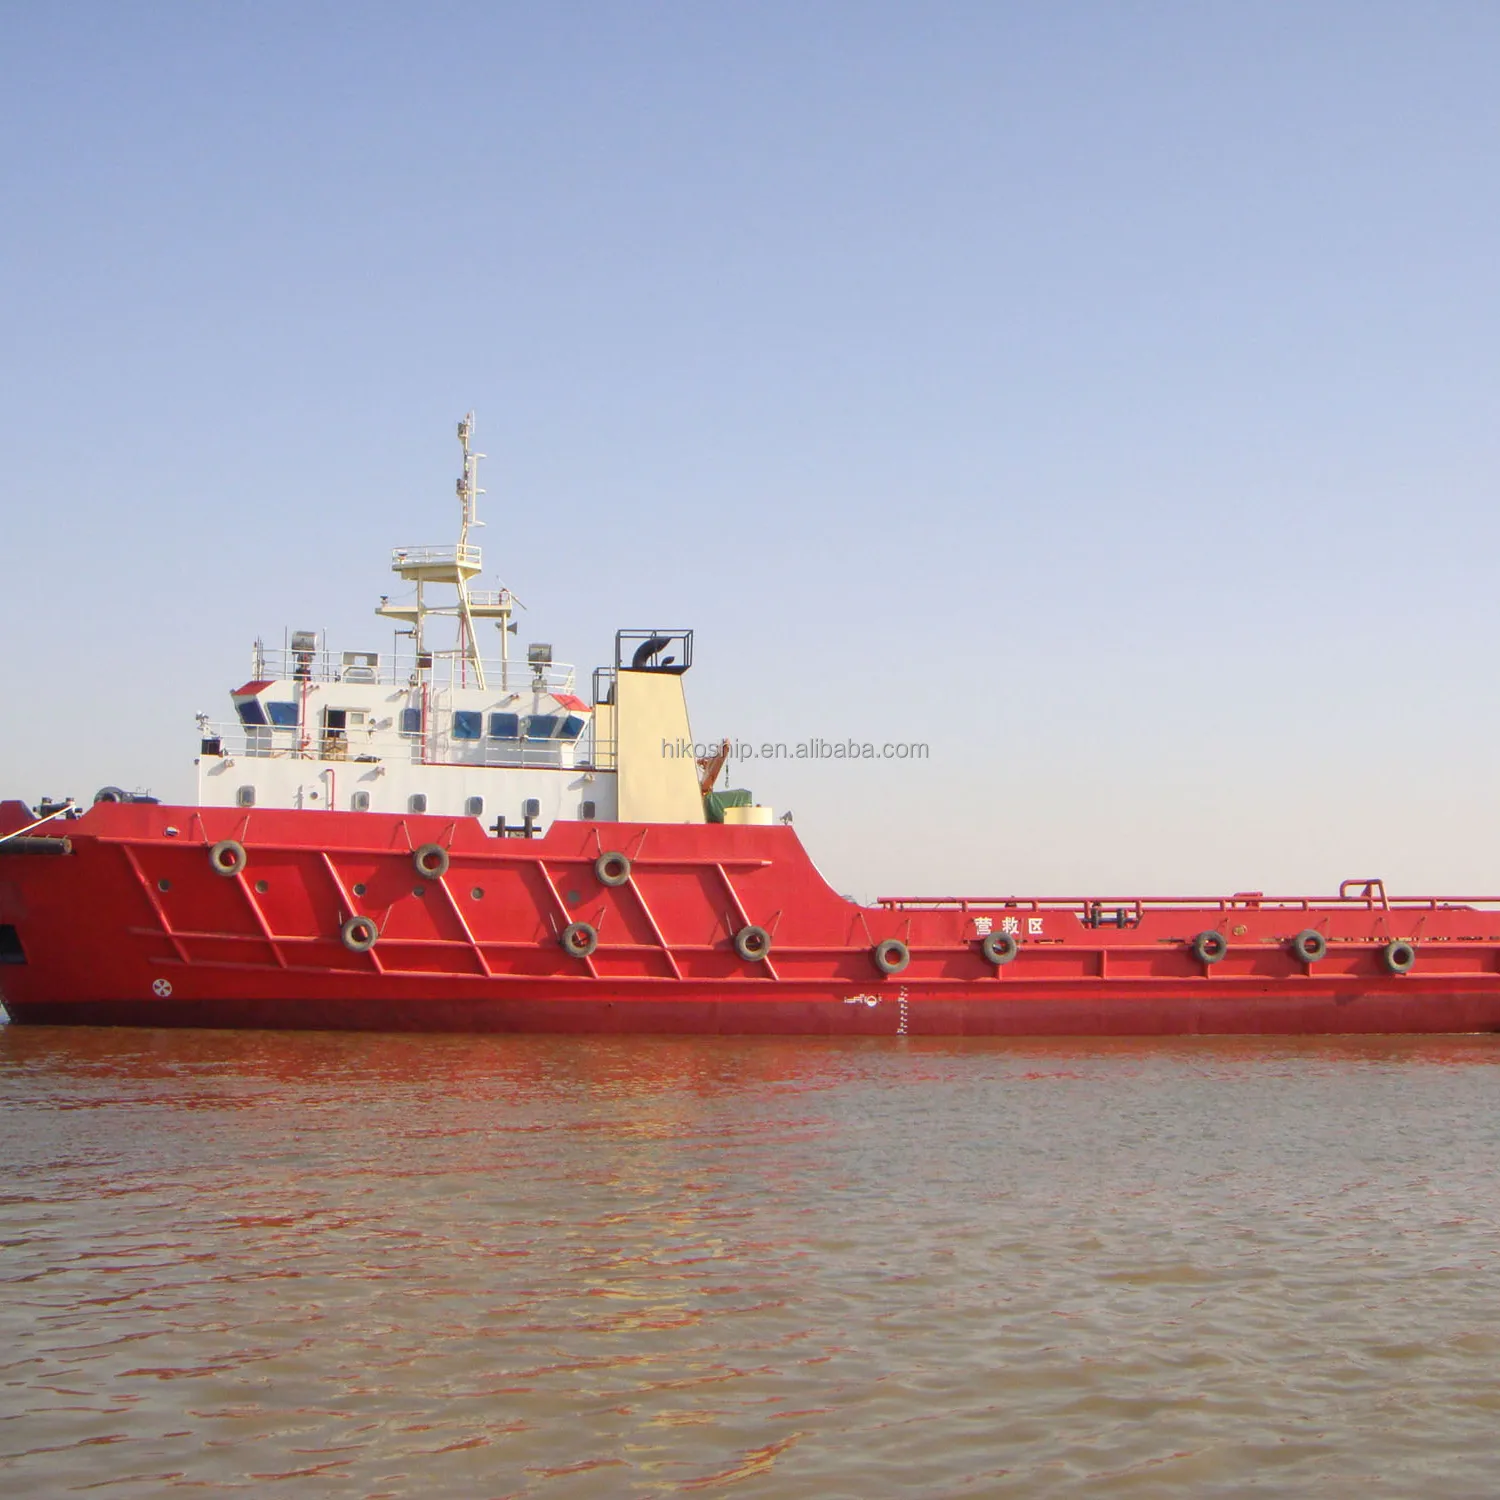 HIKOS 78m 6000HP oceanguing Tugs Port tugboats для продажи, рабочая лодка